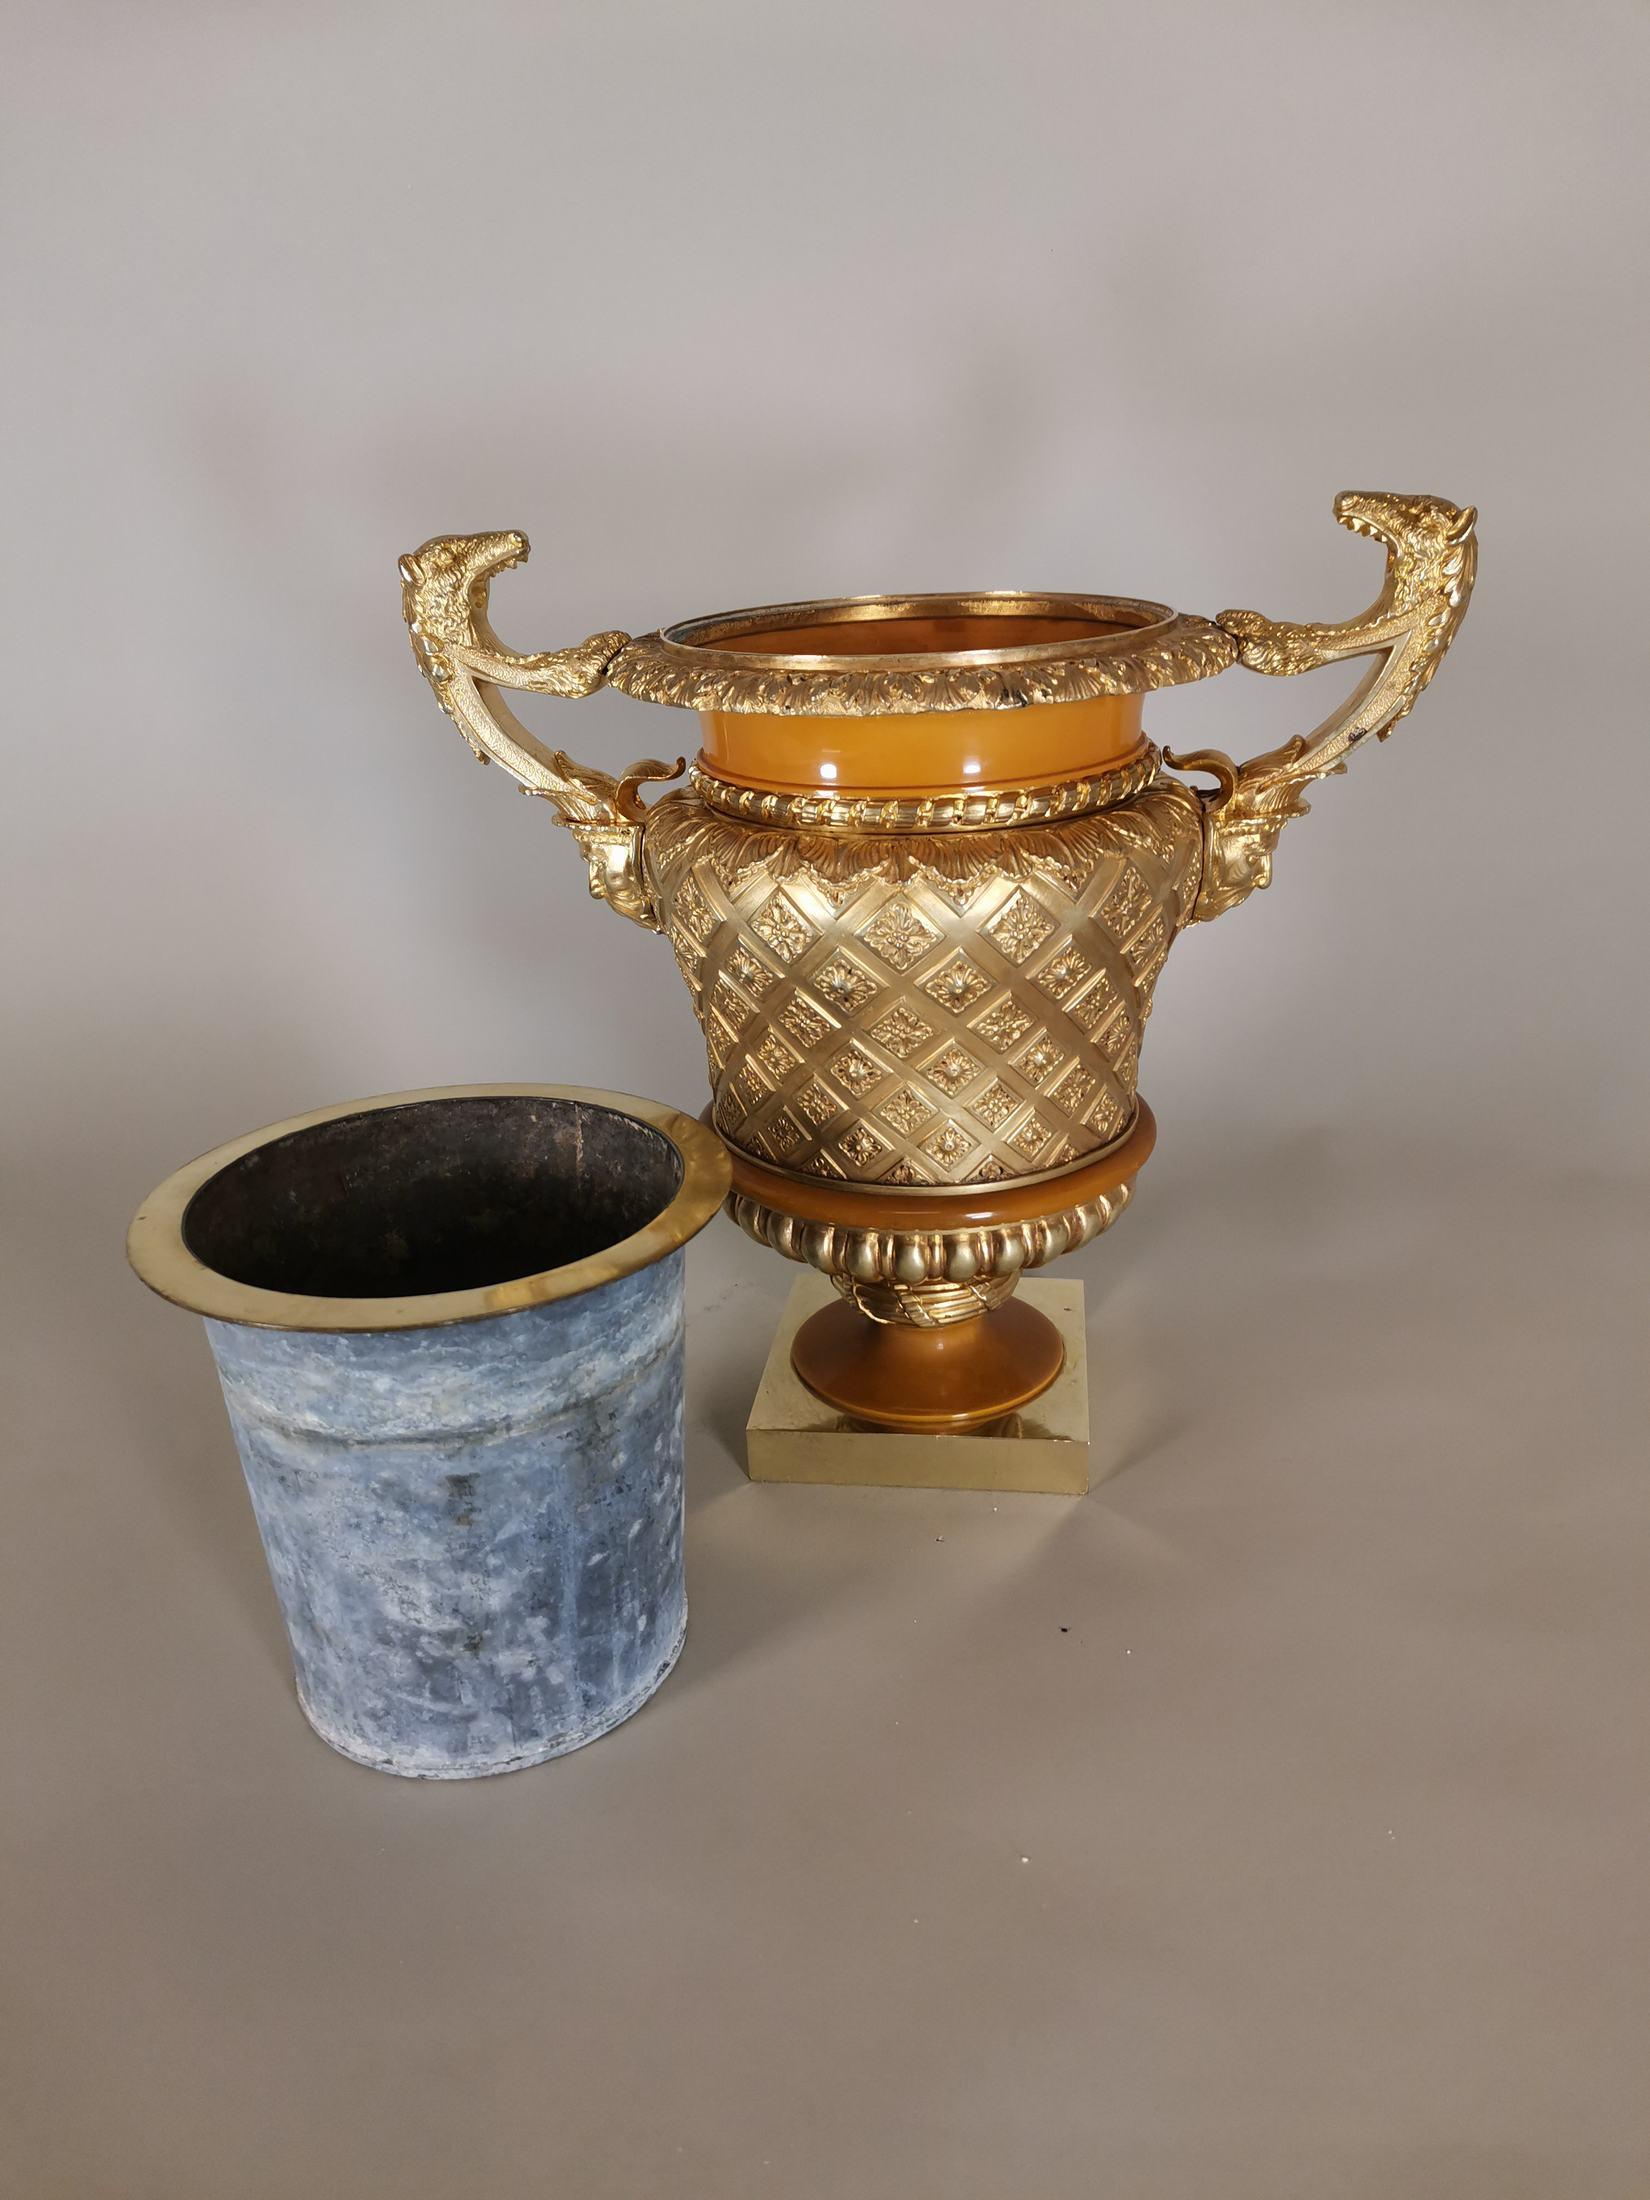 jh. Vase aus vergoldeter Bronze und dekoriertem Zelluloid mit Henkeln in Form eines grotesken Gesichts und eines Tierkopfes.
Maße: 30 x 26 x 18 cm.